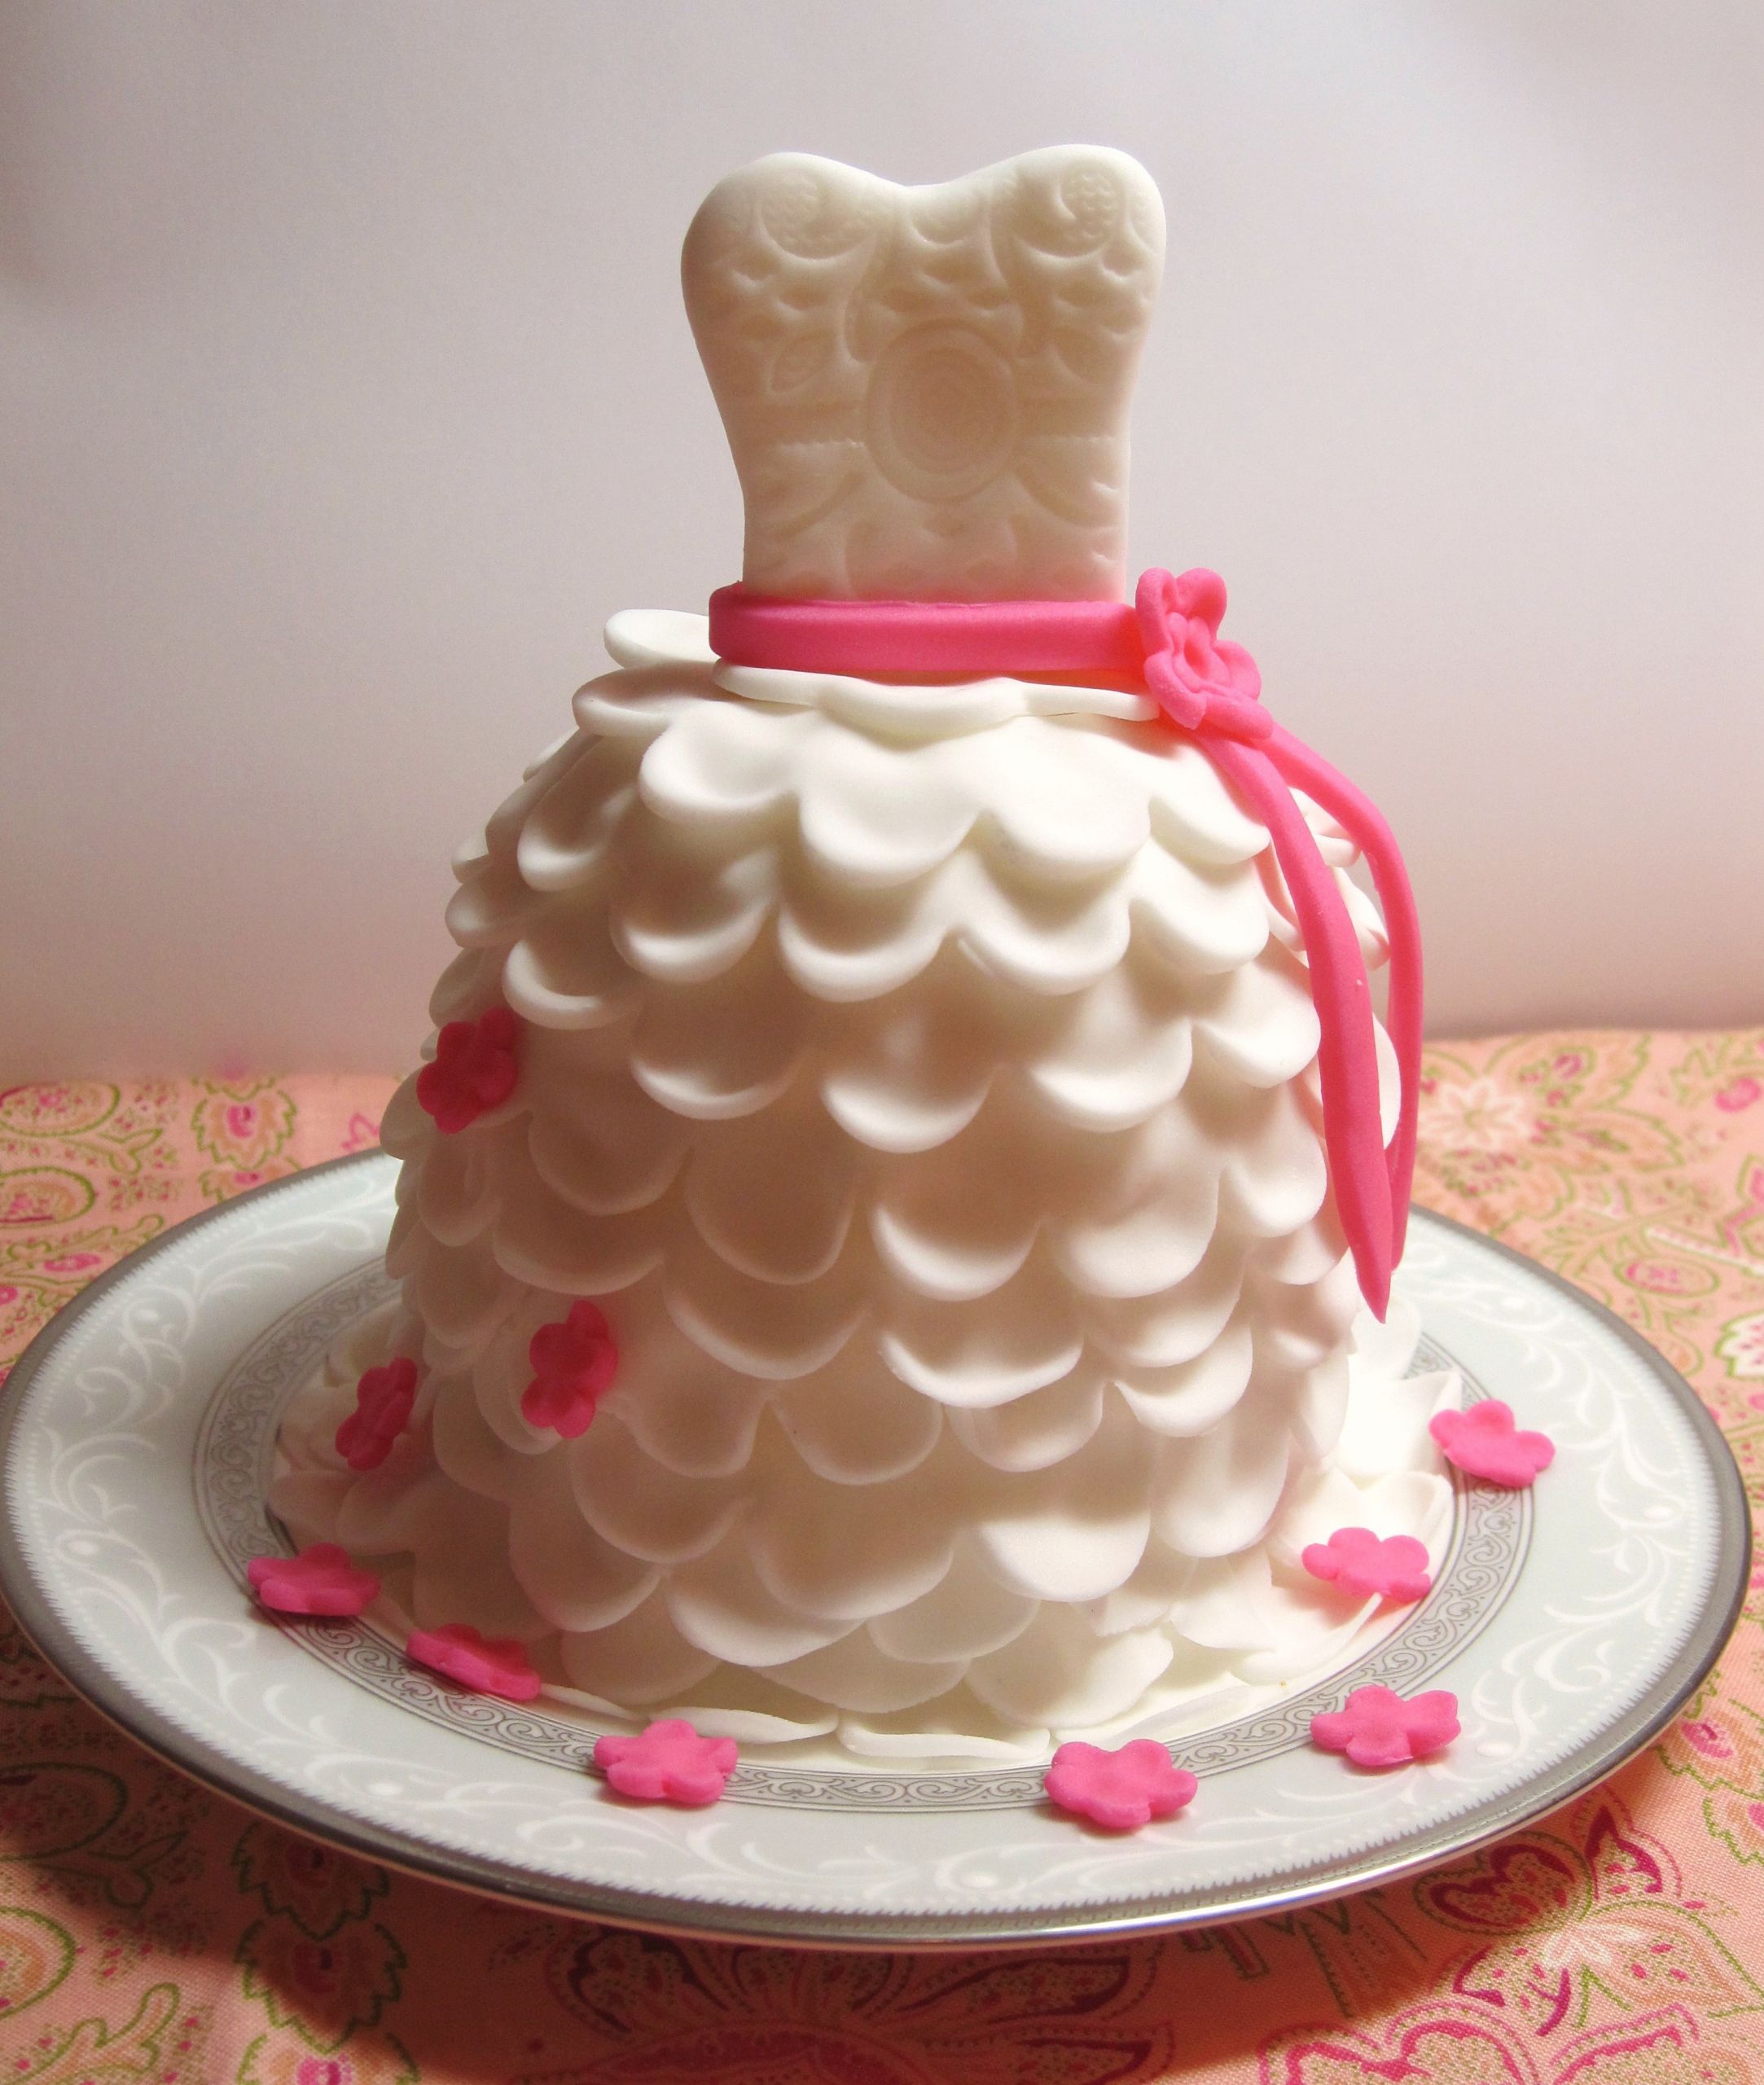 DIY Wedding Cupcakes
 DIY How to Make Beautiful Wedding Dress Cupcakes with